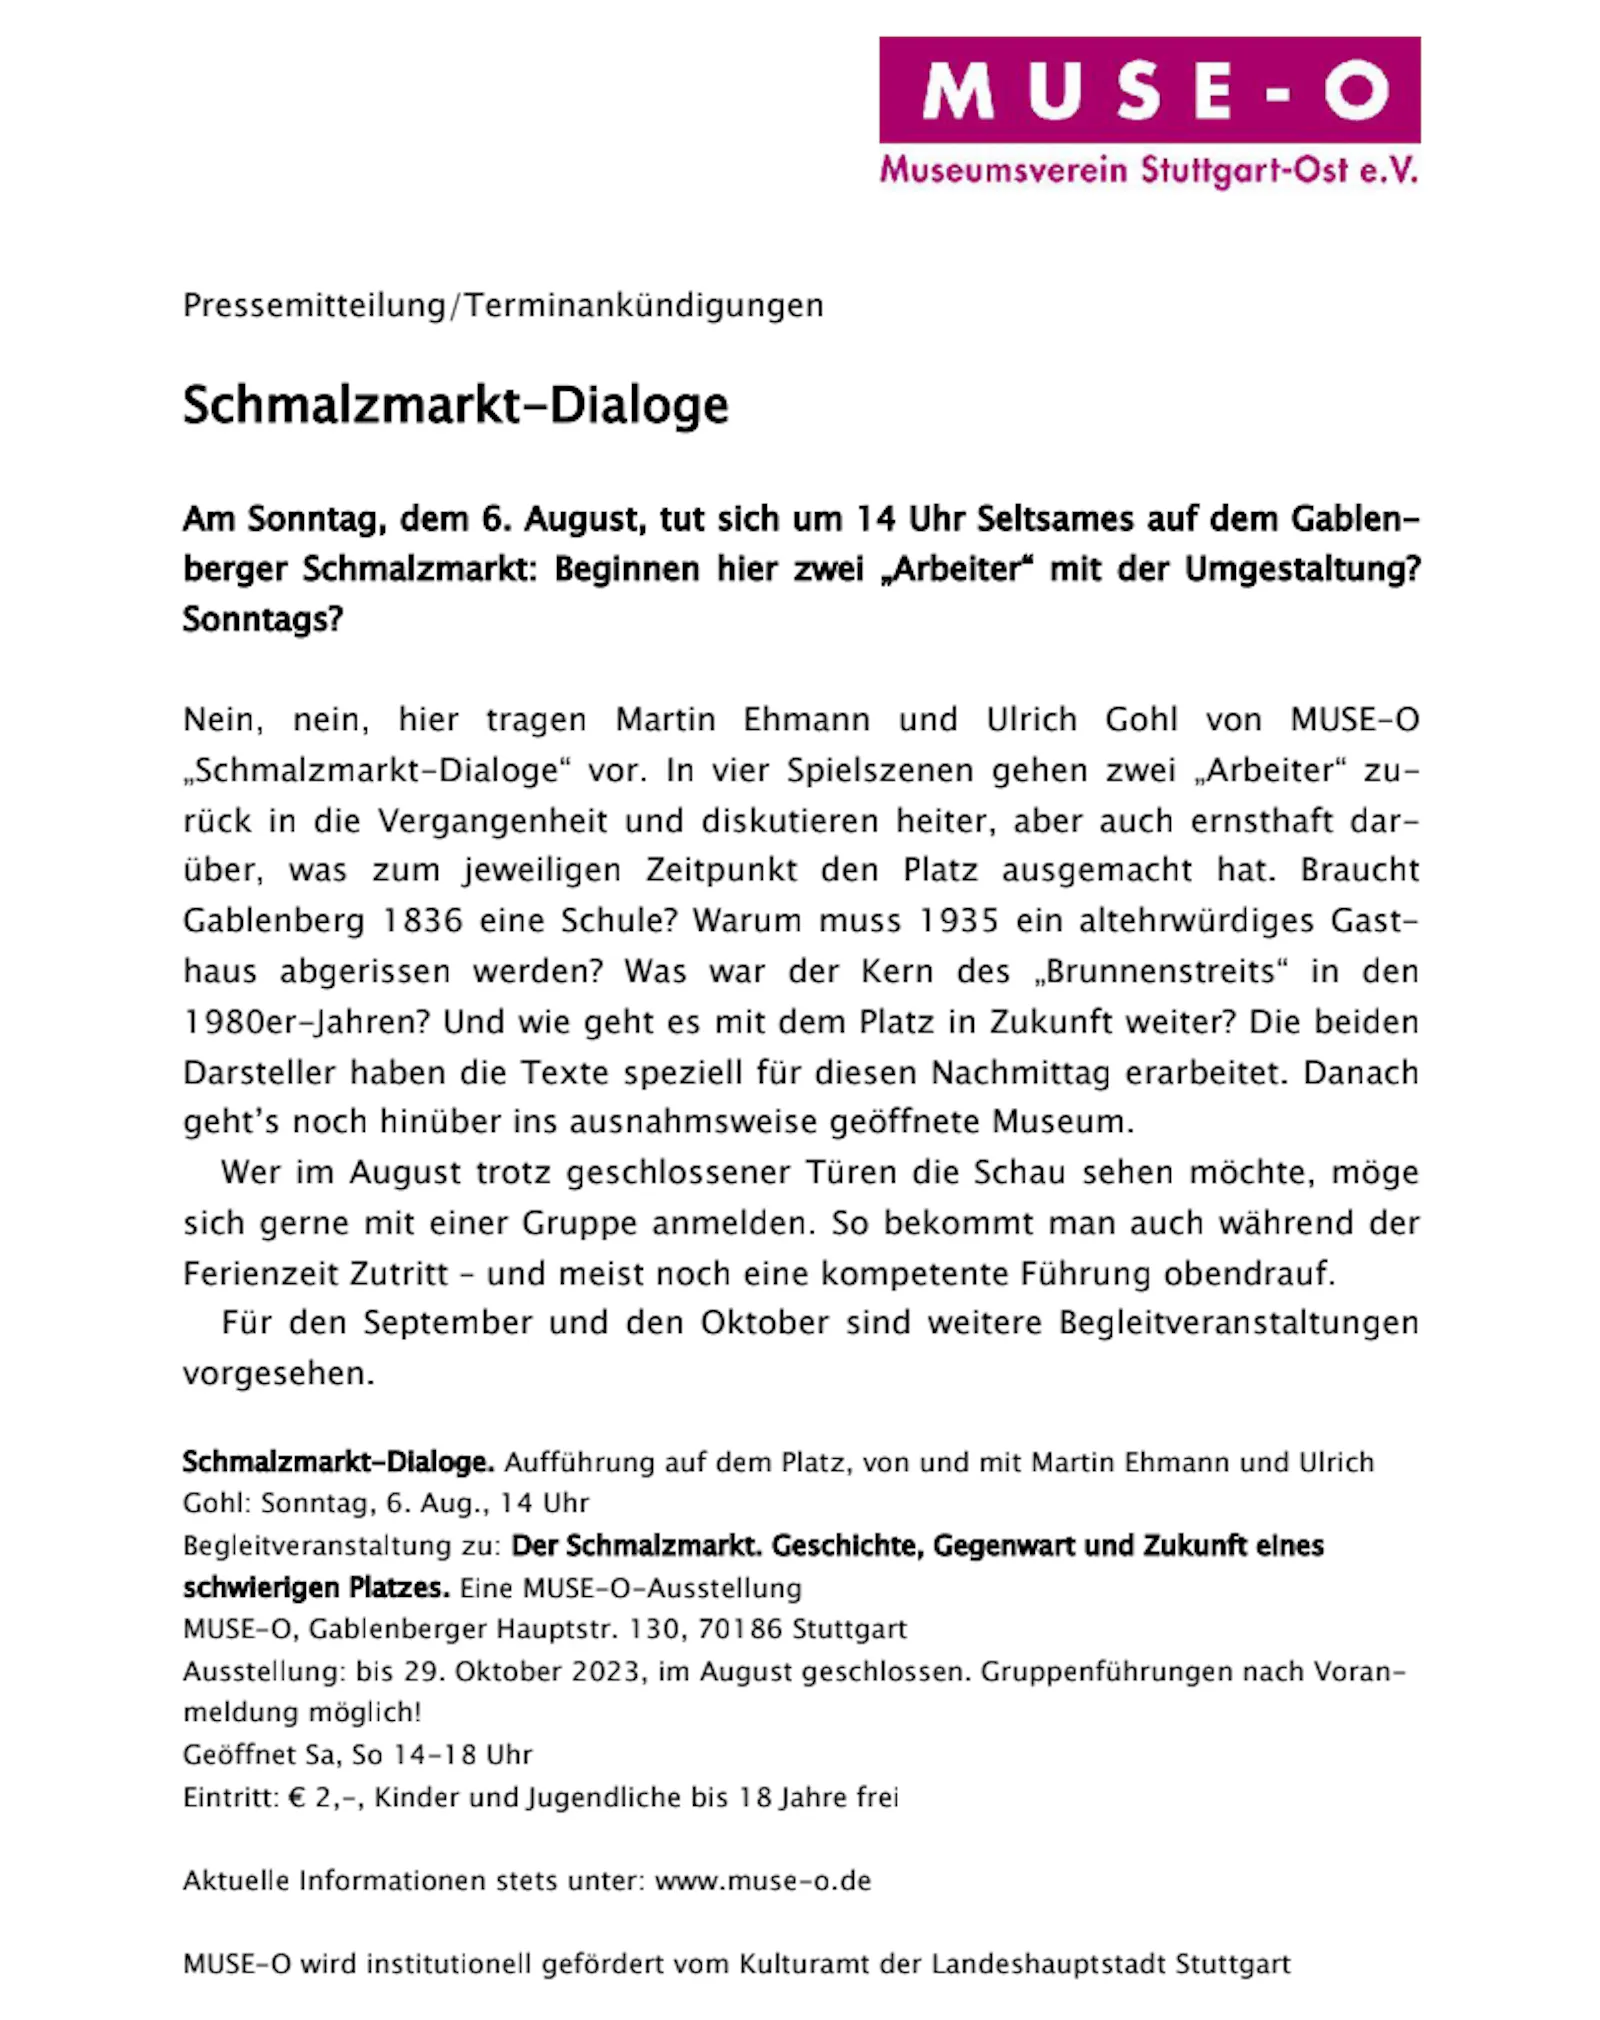 Pressemitteilung des Museumsverseins Stuttgart-Ost (Muse-O) zur Veranstaltung "Schmalzmarkt-Dialoge"